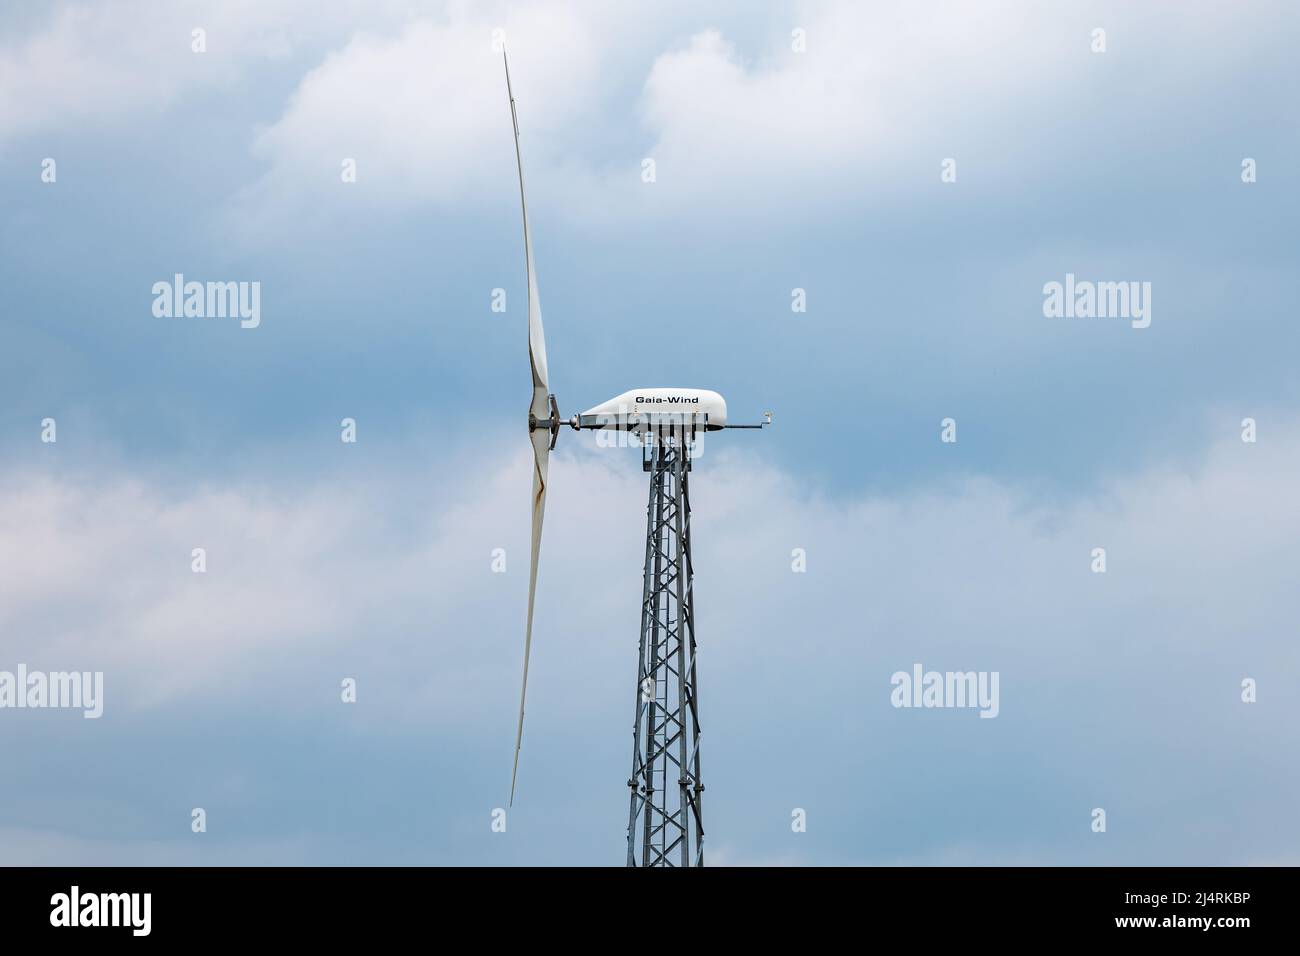 Gaia turbina de energía renovable torre y palas contra un cielo azul nublado, Escocia, Reino Unido Foto de stock